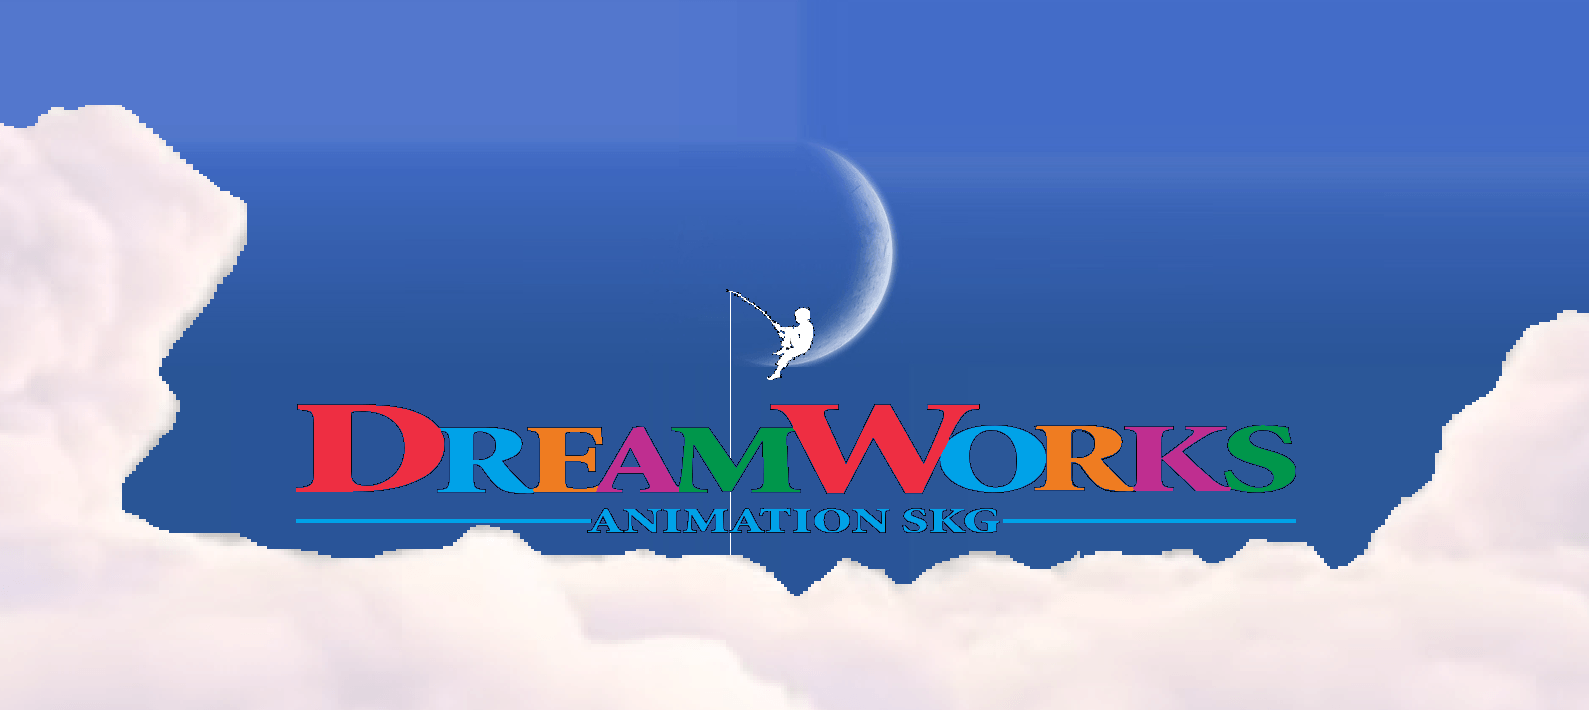 DreamWorks 2018 Logo - Image - DreamWorks Animation logo (2010-2018; daytime version).png ...